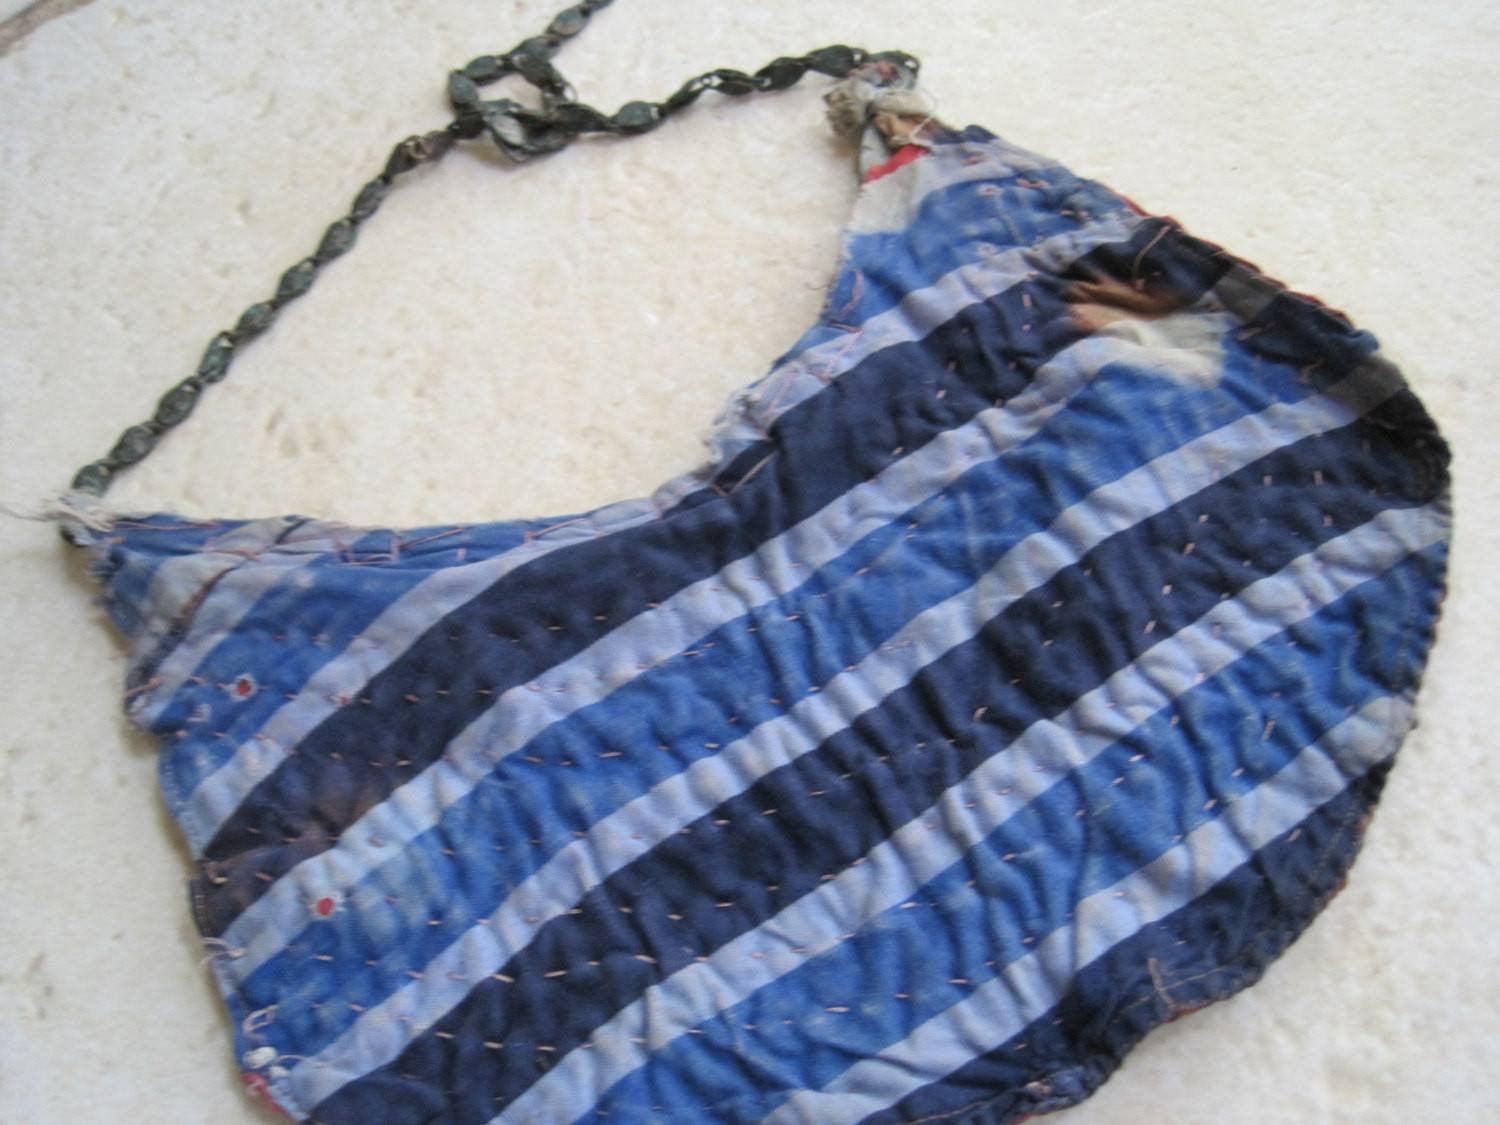 yemeni necklace on cloth